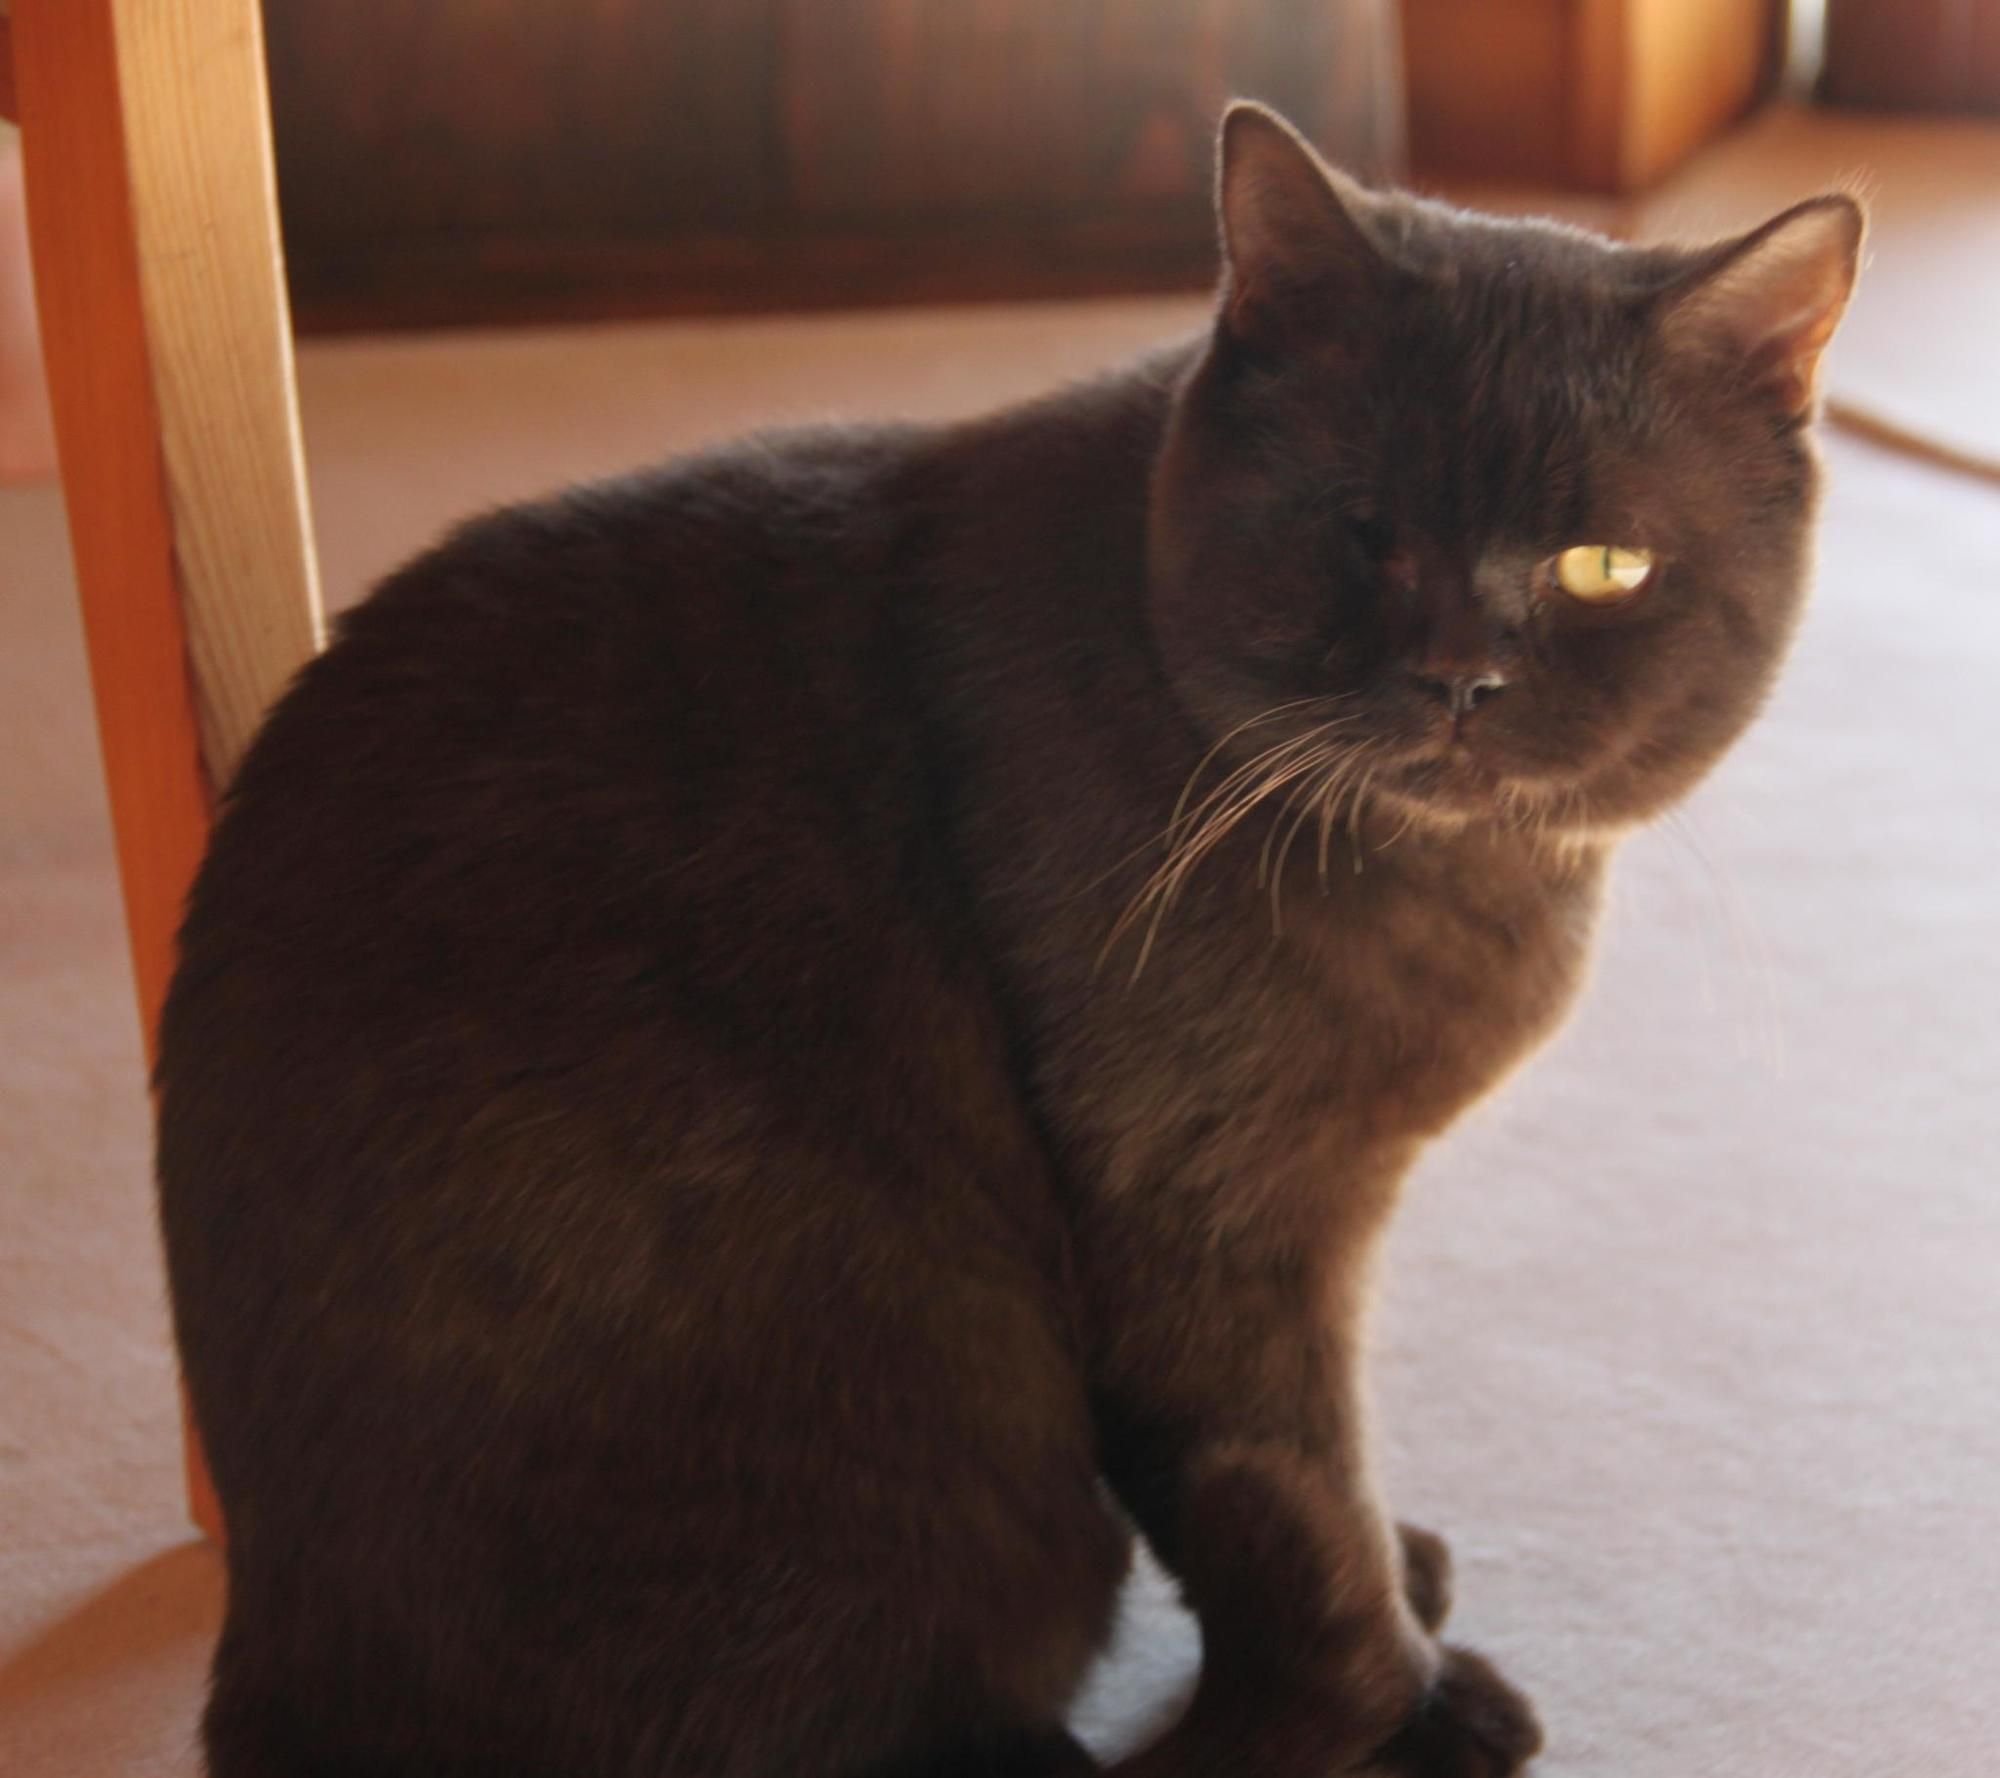 Blaulicht vom 10. August: Tierquäler schießt Katze Auge aus